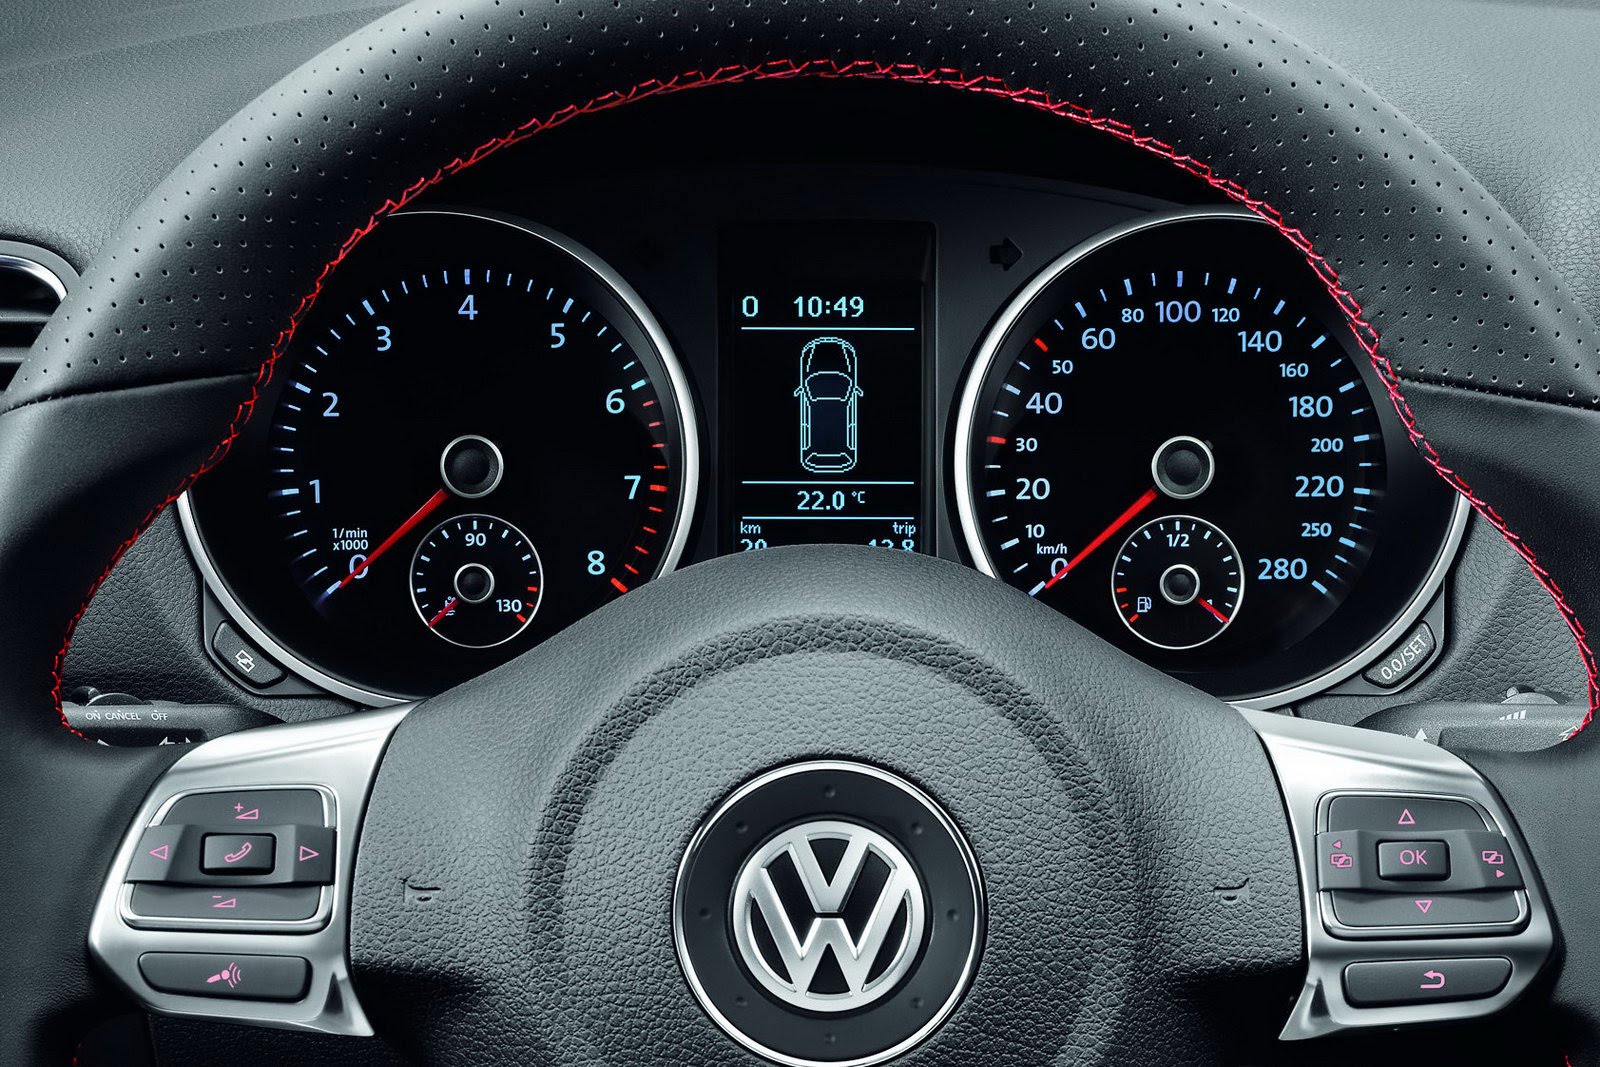 Бортовой компьютер показывает неверные интервалы обслуживания на VW Golf VI фото